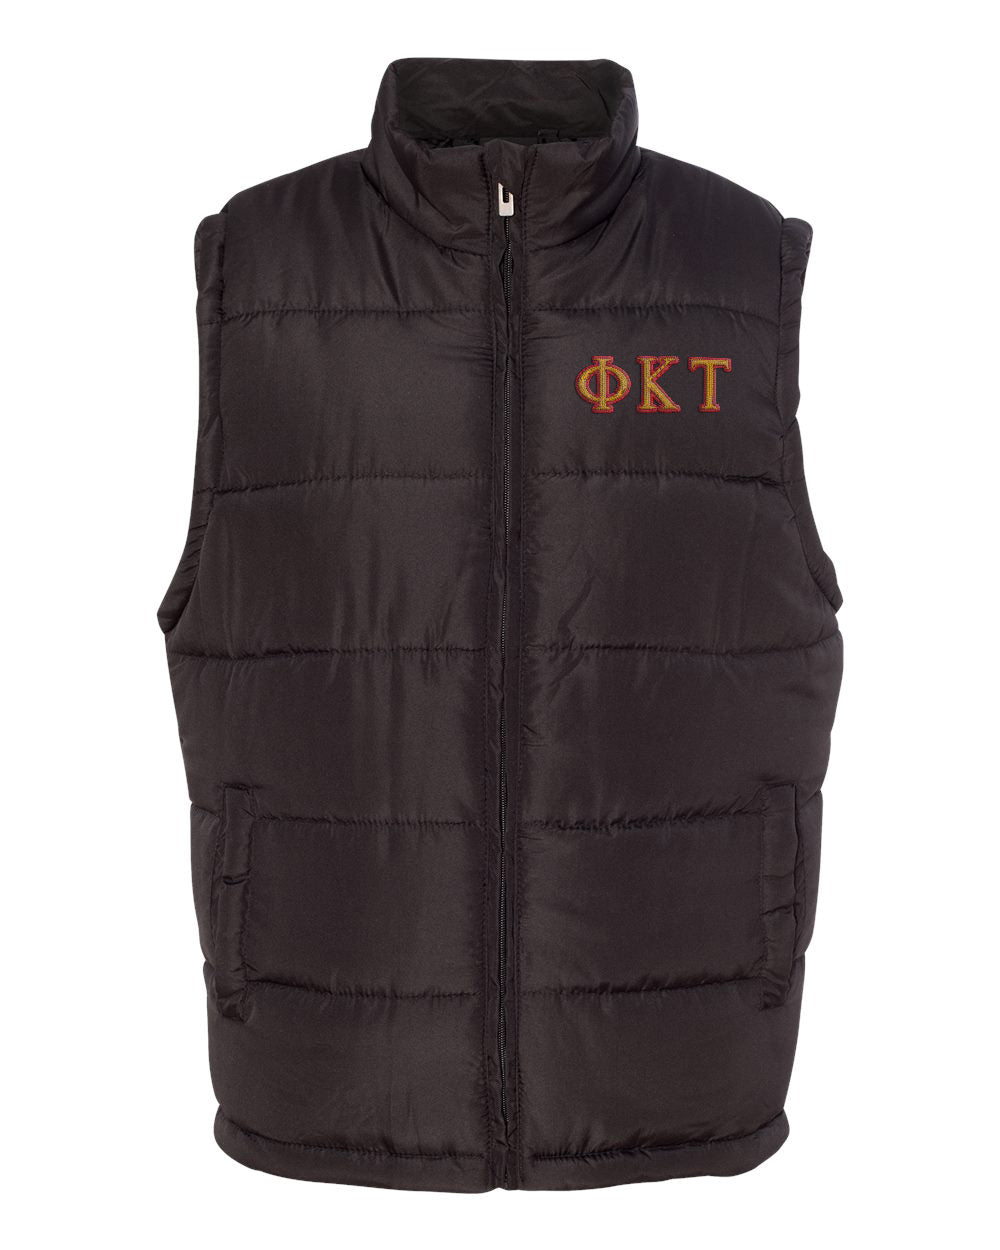 Phi Kappa Tau Embroidered Puffer Vest